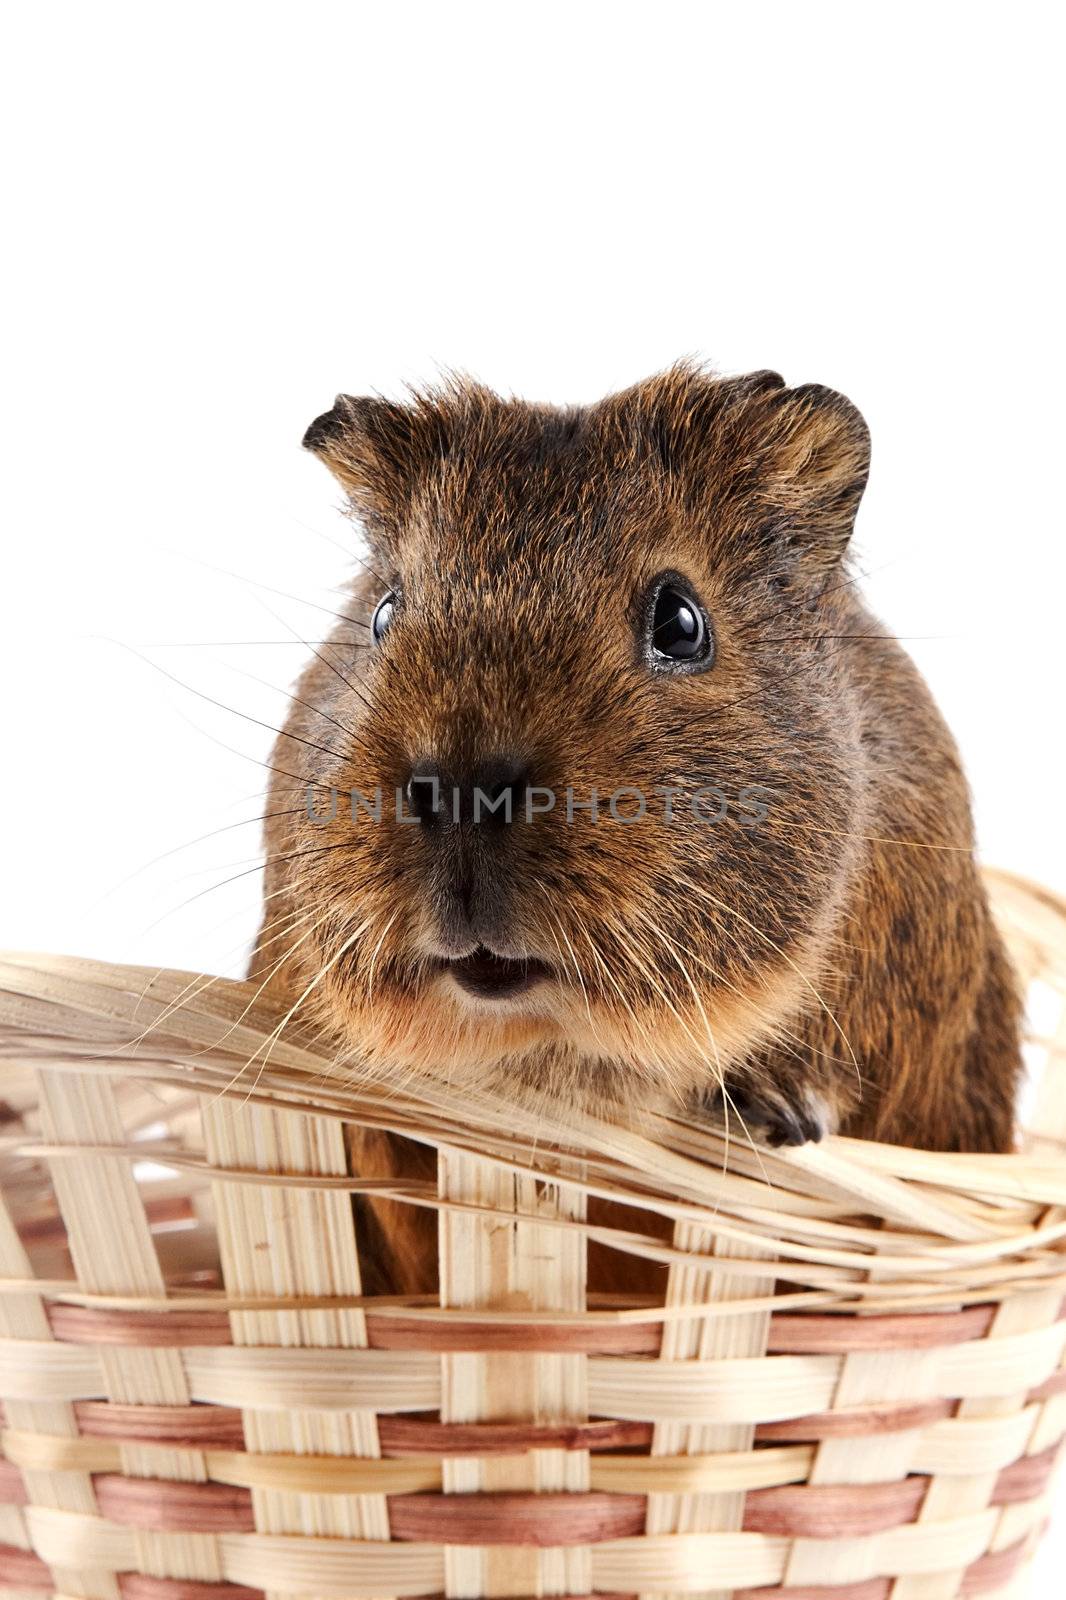 Guinea pig in a wattled basket by Azaliya